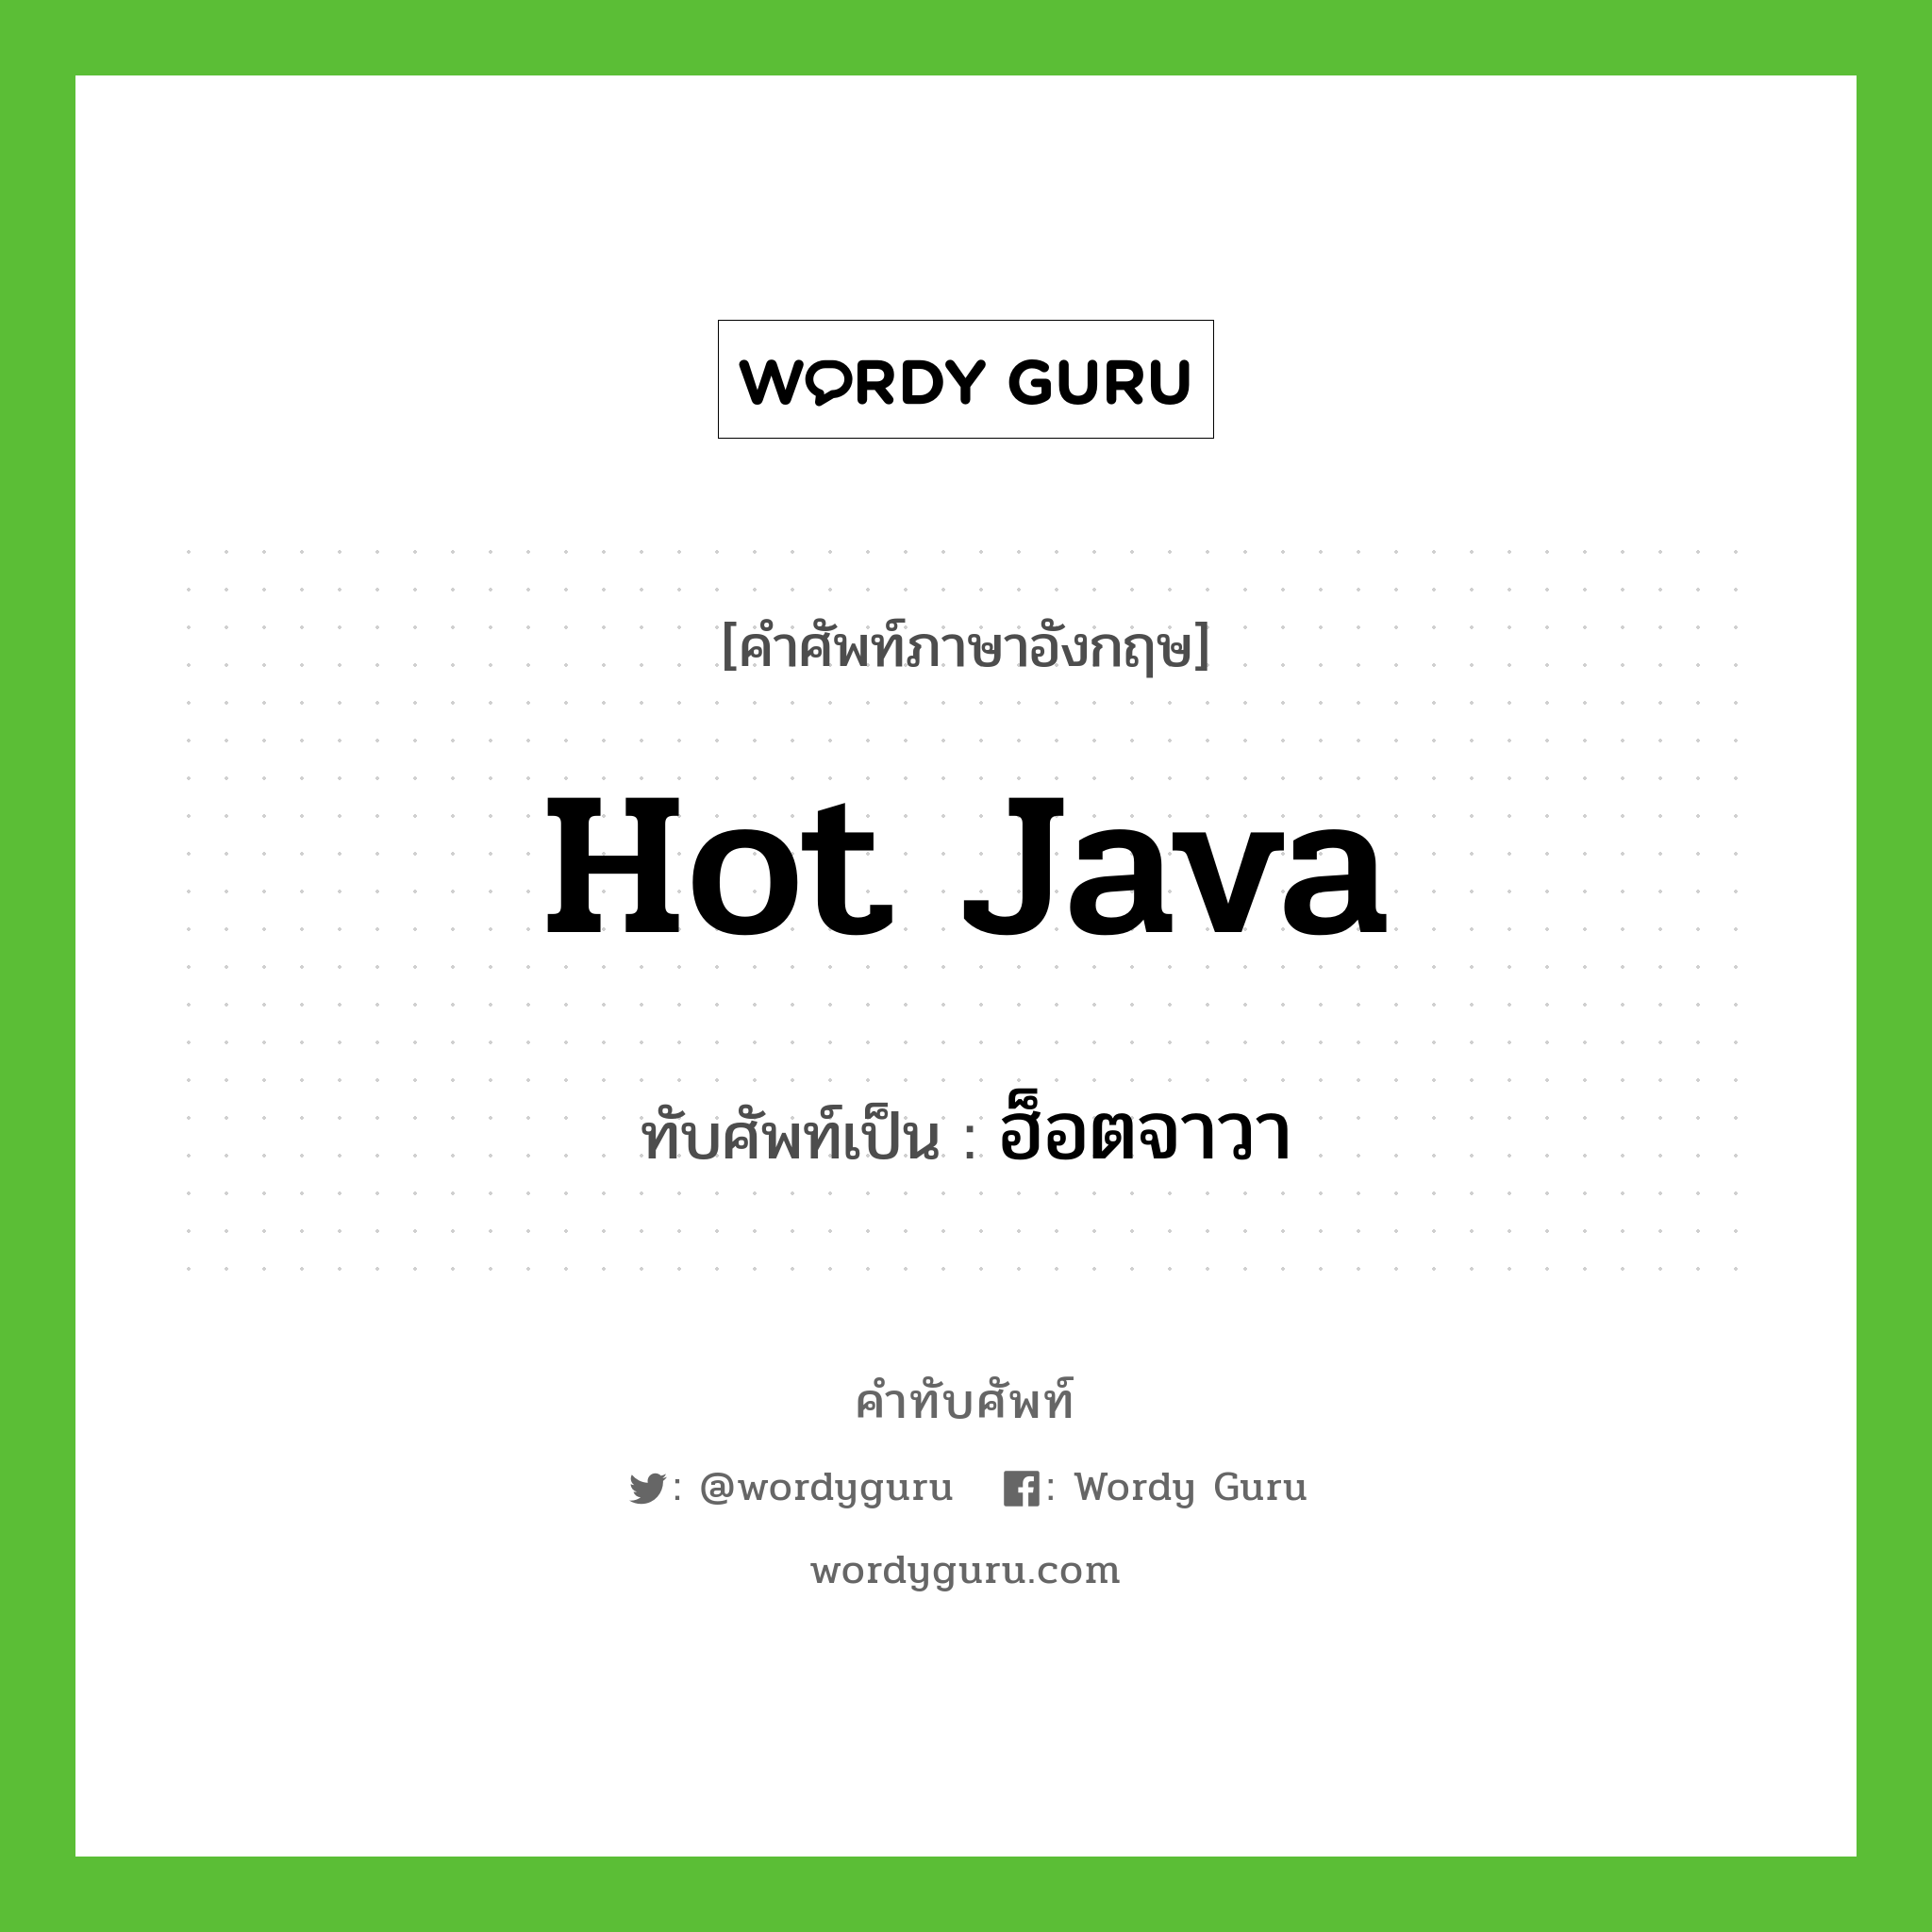 ฮ็อตจาวา เขียนอย่างไร?, คำศัพท์ภาษาอังกฤษ ฮ็อตจาวา ทับศัพท์เป็น Hot Java